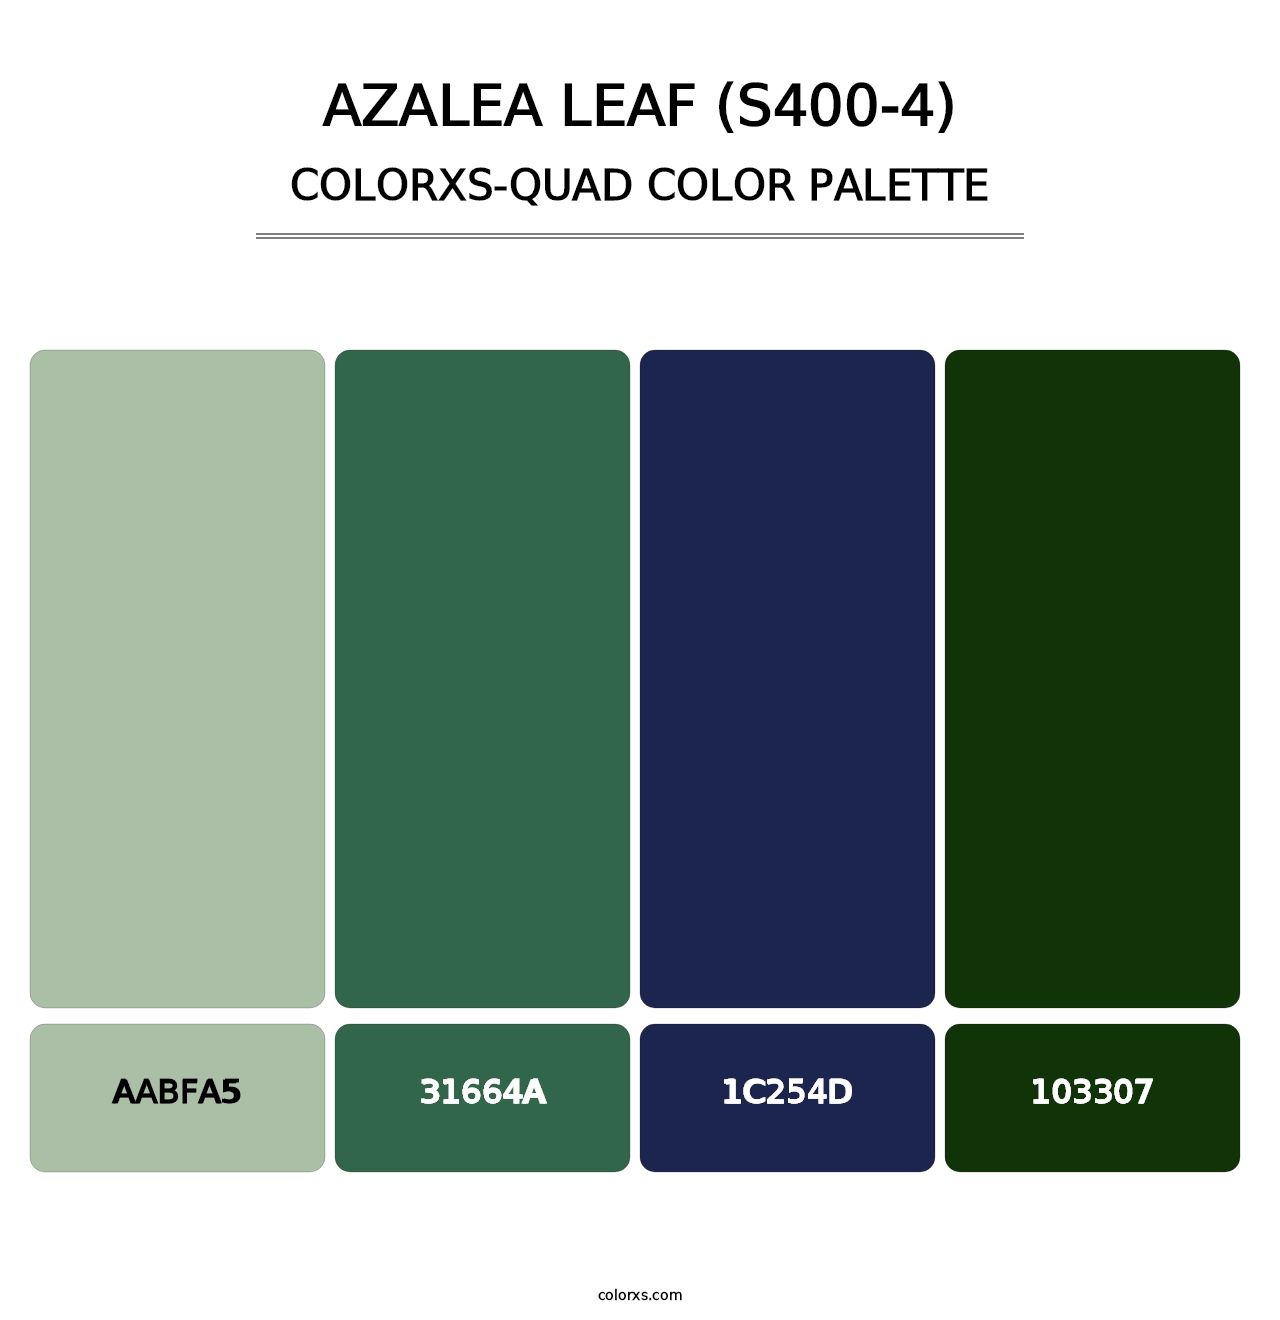 Azalea Leaf (S400-4) - Colorxs Quad Palette